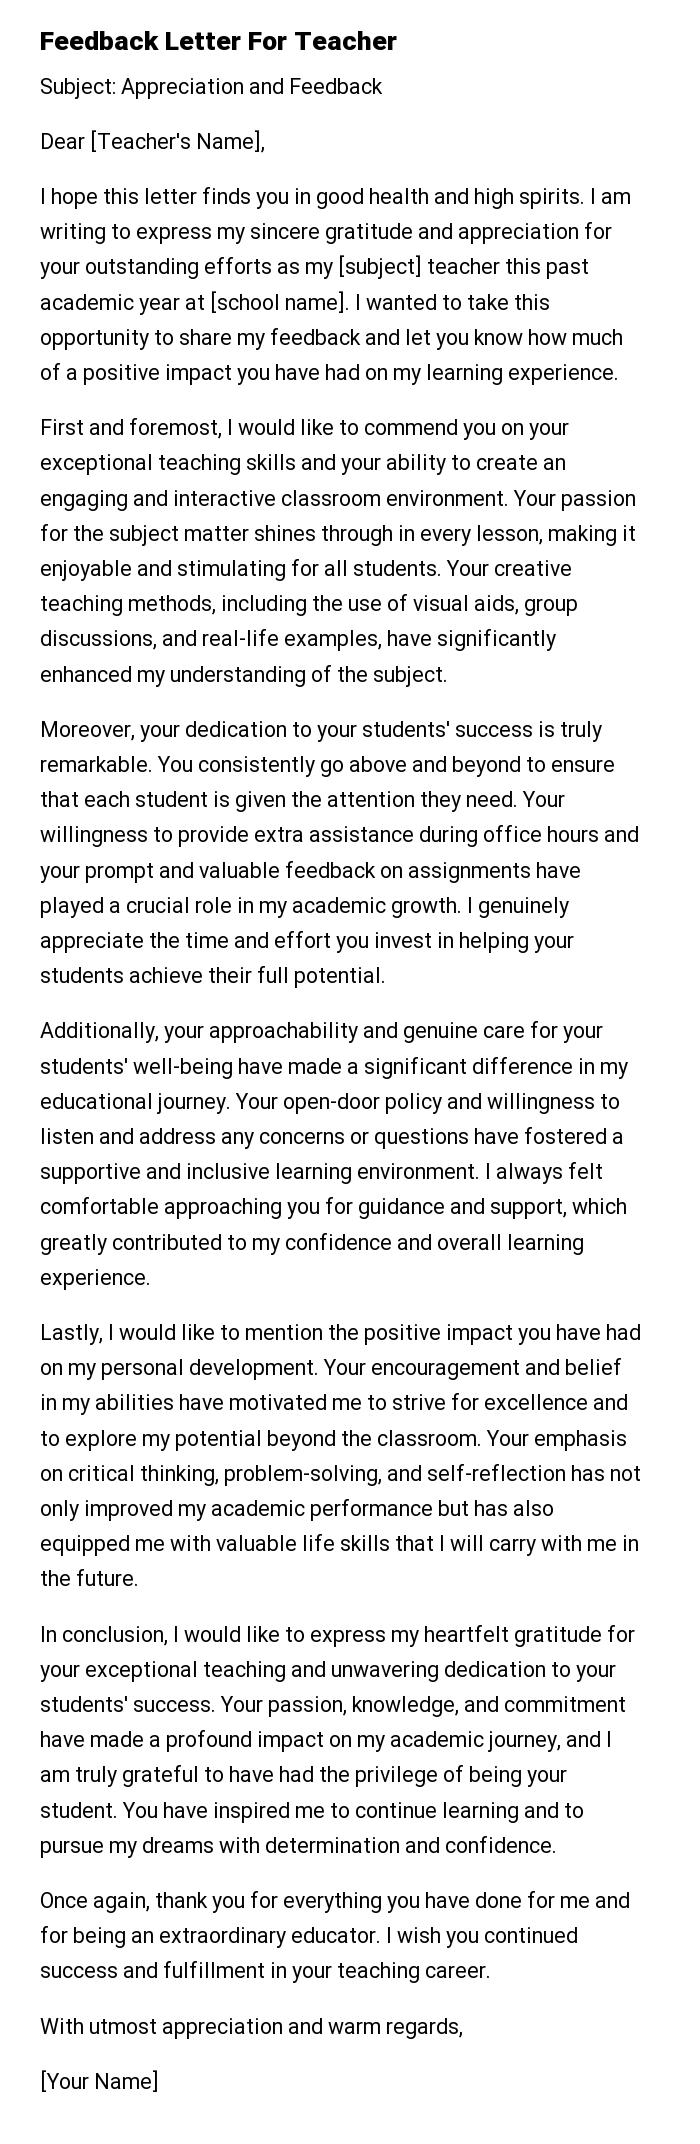 Feedback Letter For Teacher